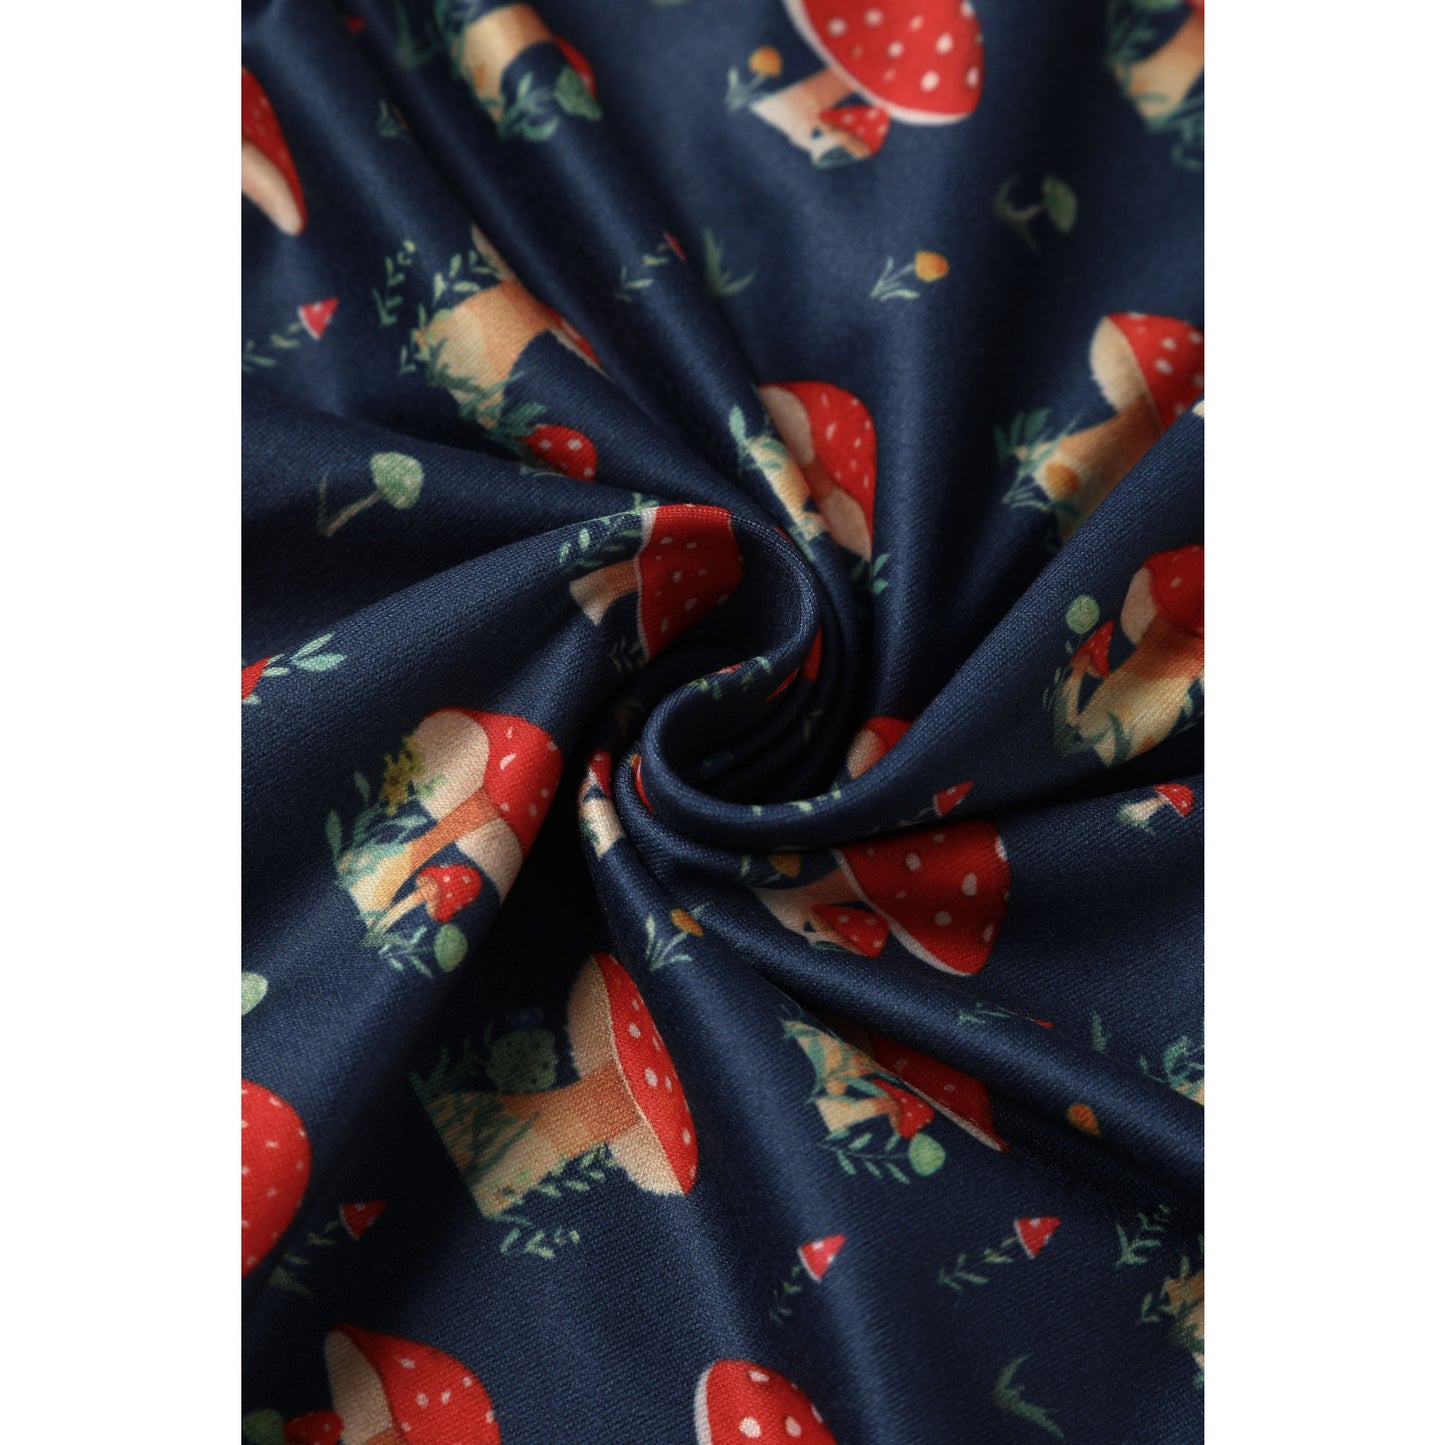 Billie Long Sleeved Dress in Blue & Red Mushroom Print